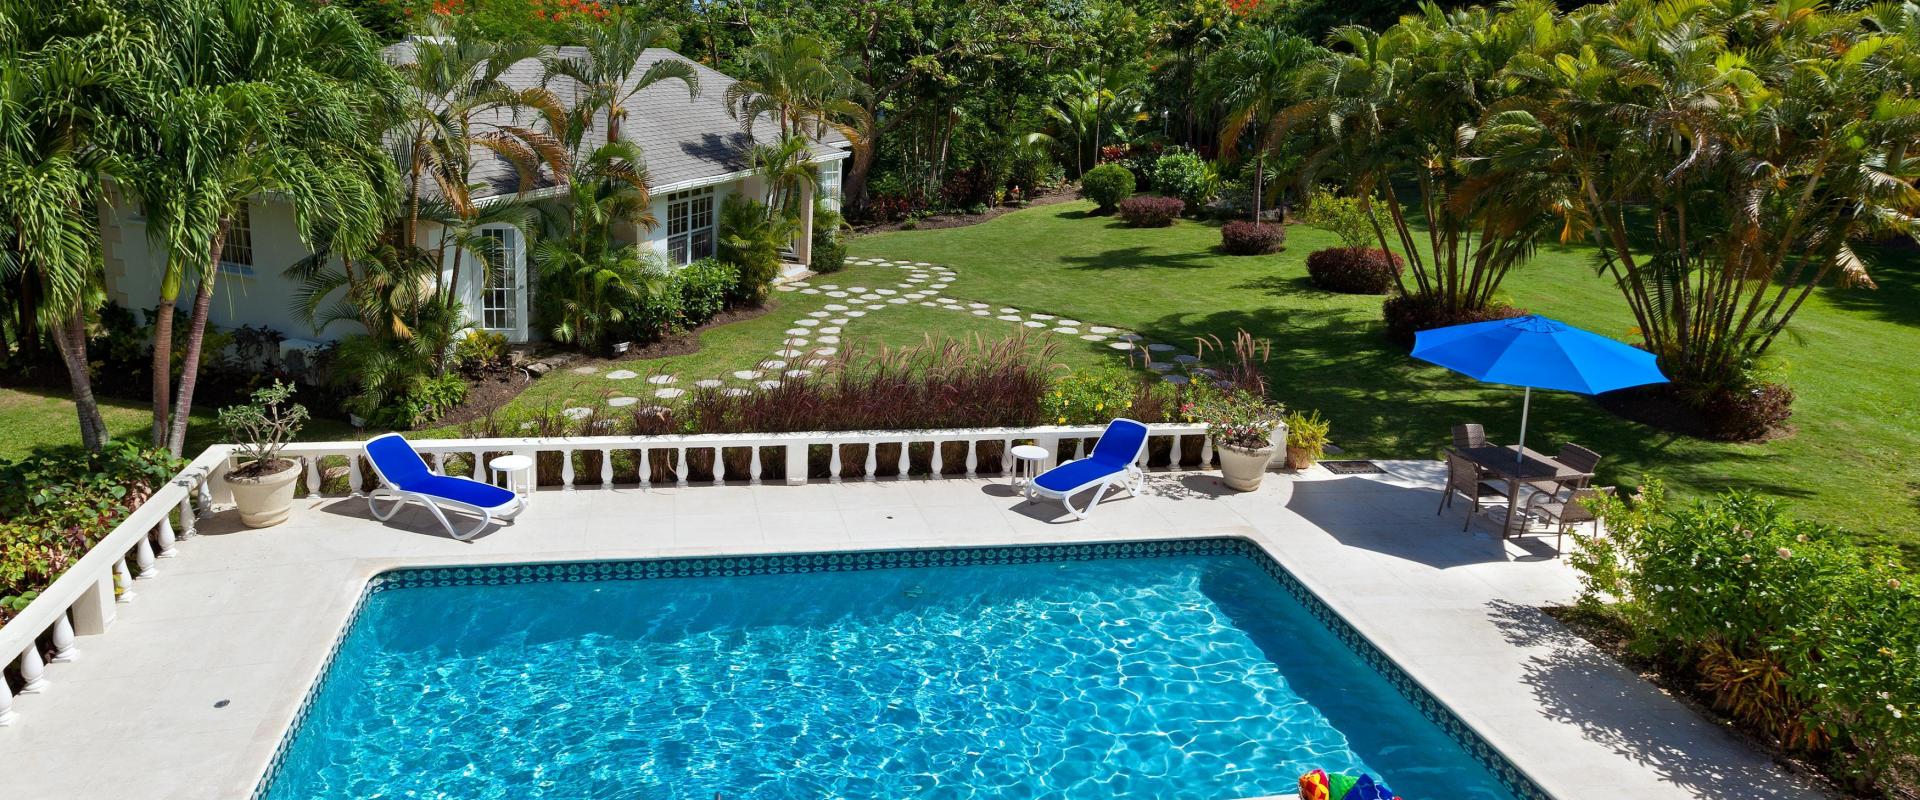 Barbados Holiday Rental Rose Of Sharon Sandy Lane Pool 1